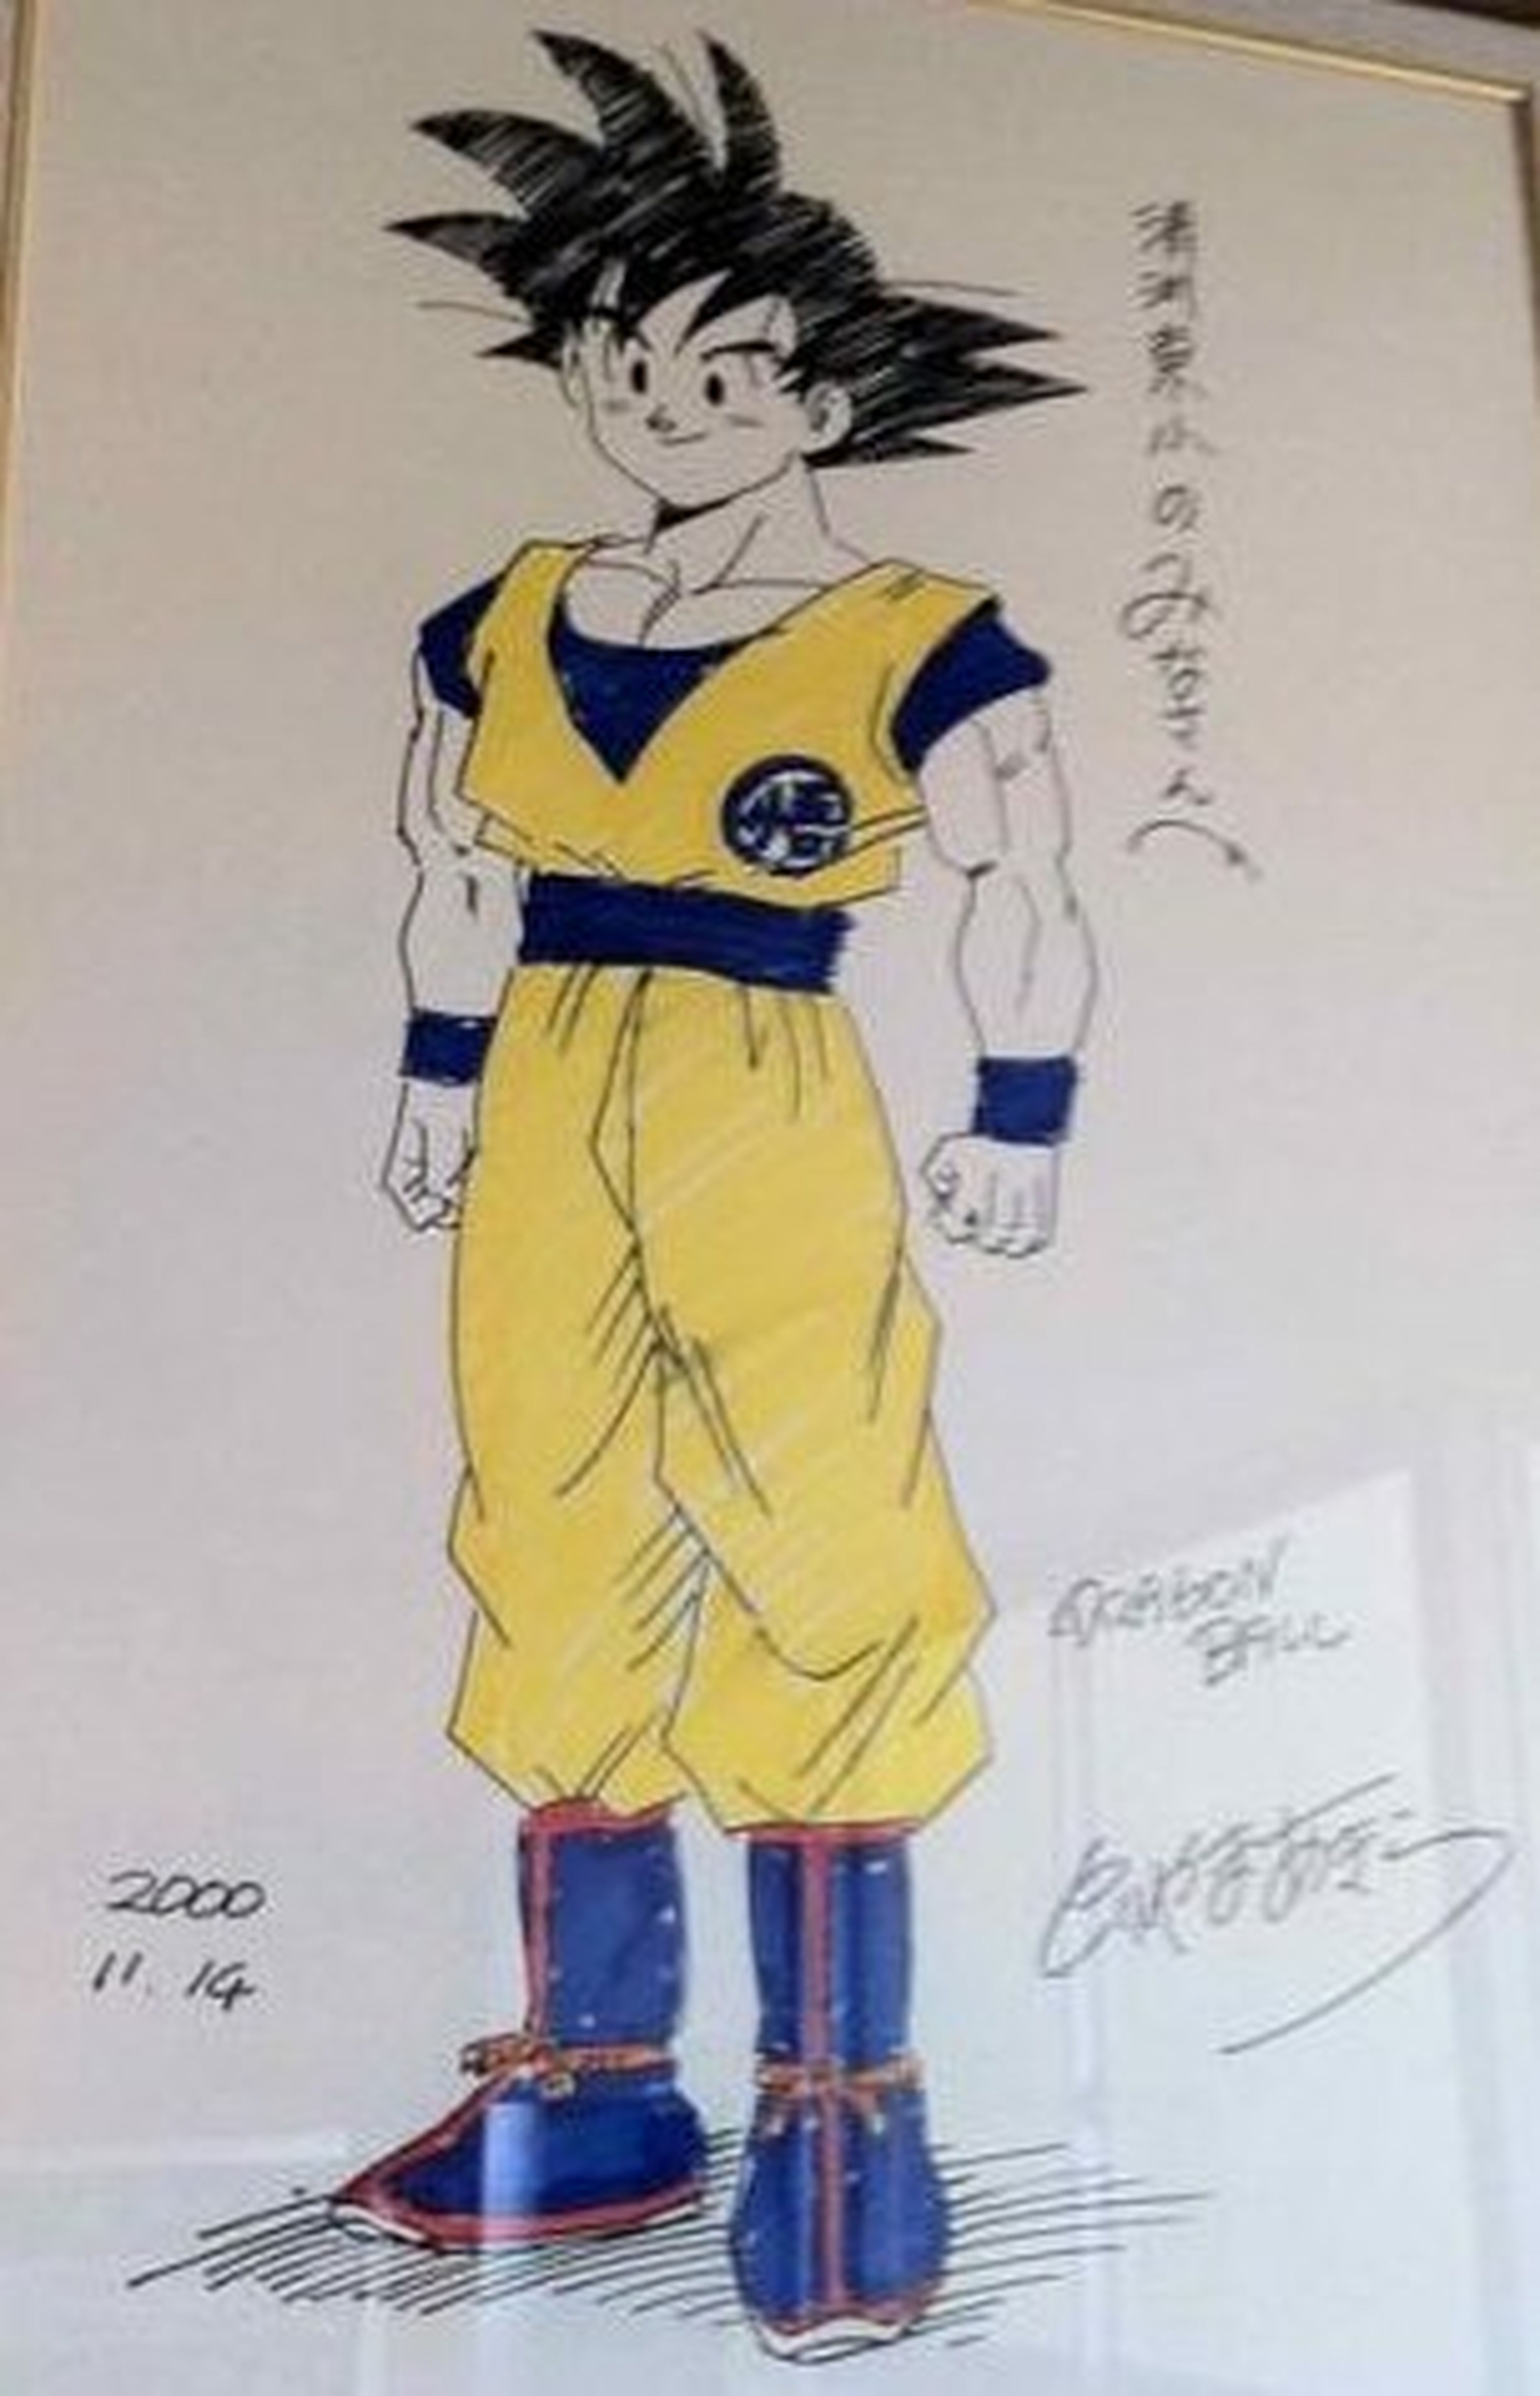 Dragon Ball - Sale a la luz un dibujo rarísimo de Goku dibujado por Akira Toriyama en el año 2000